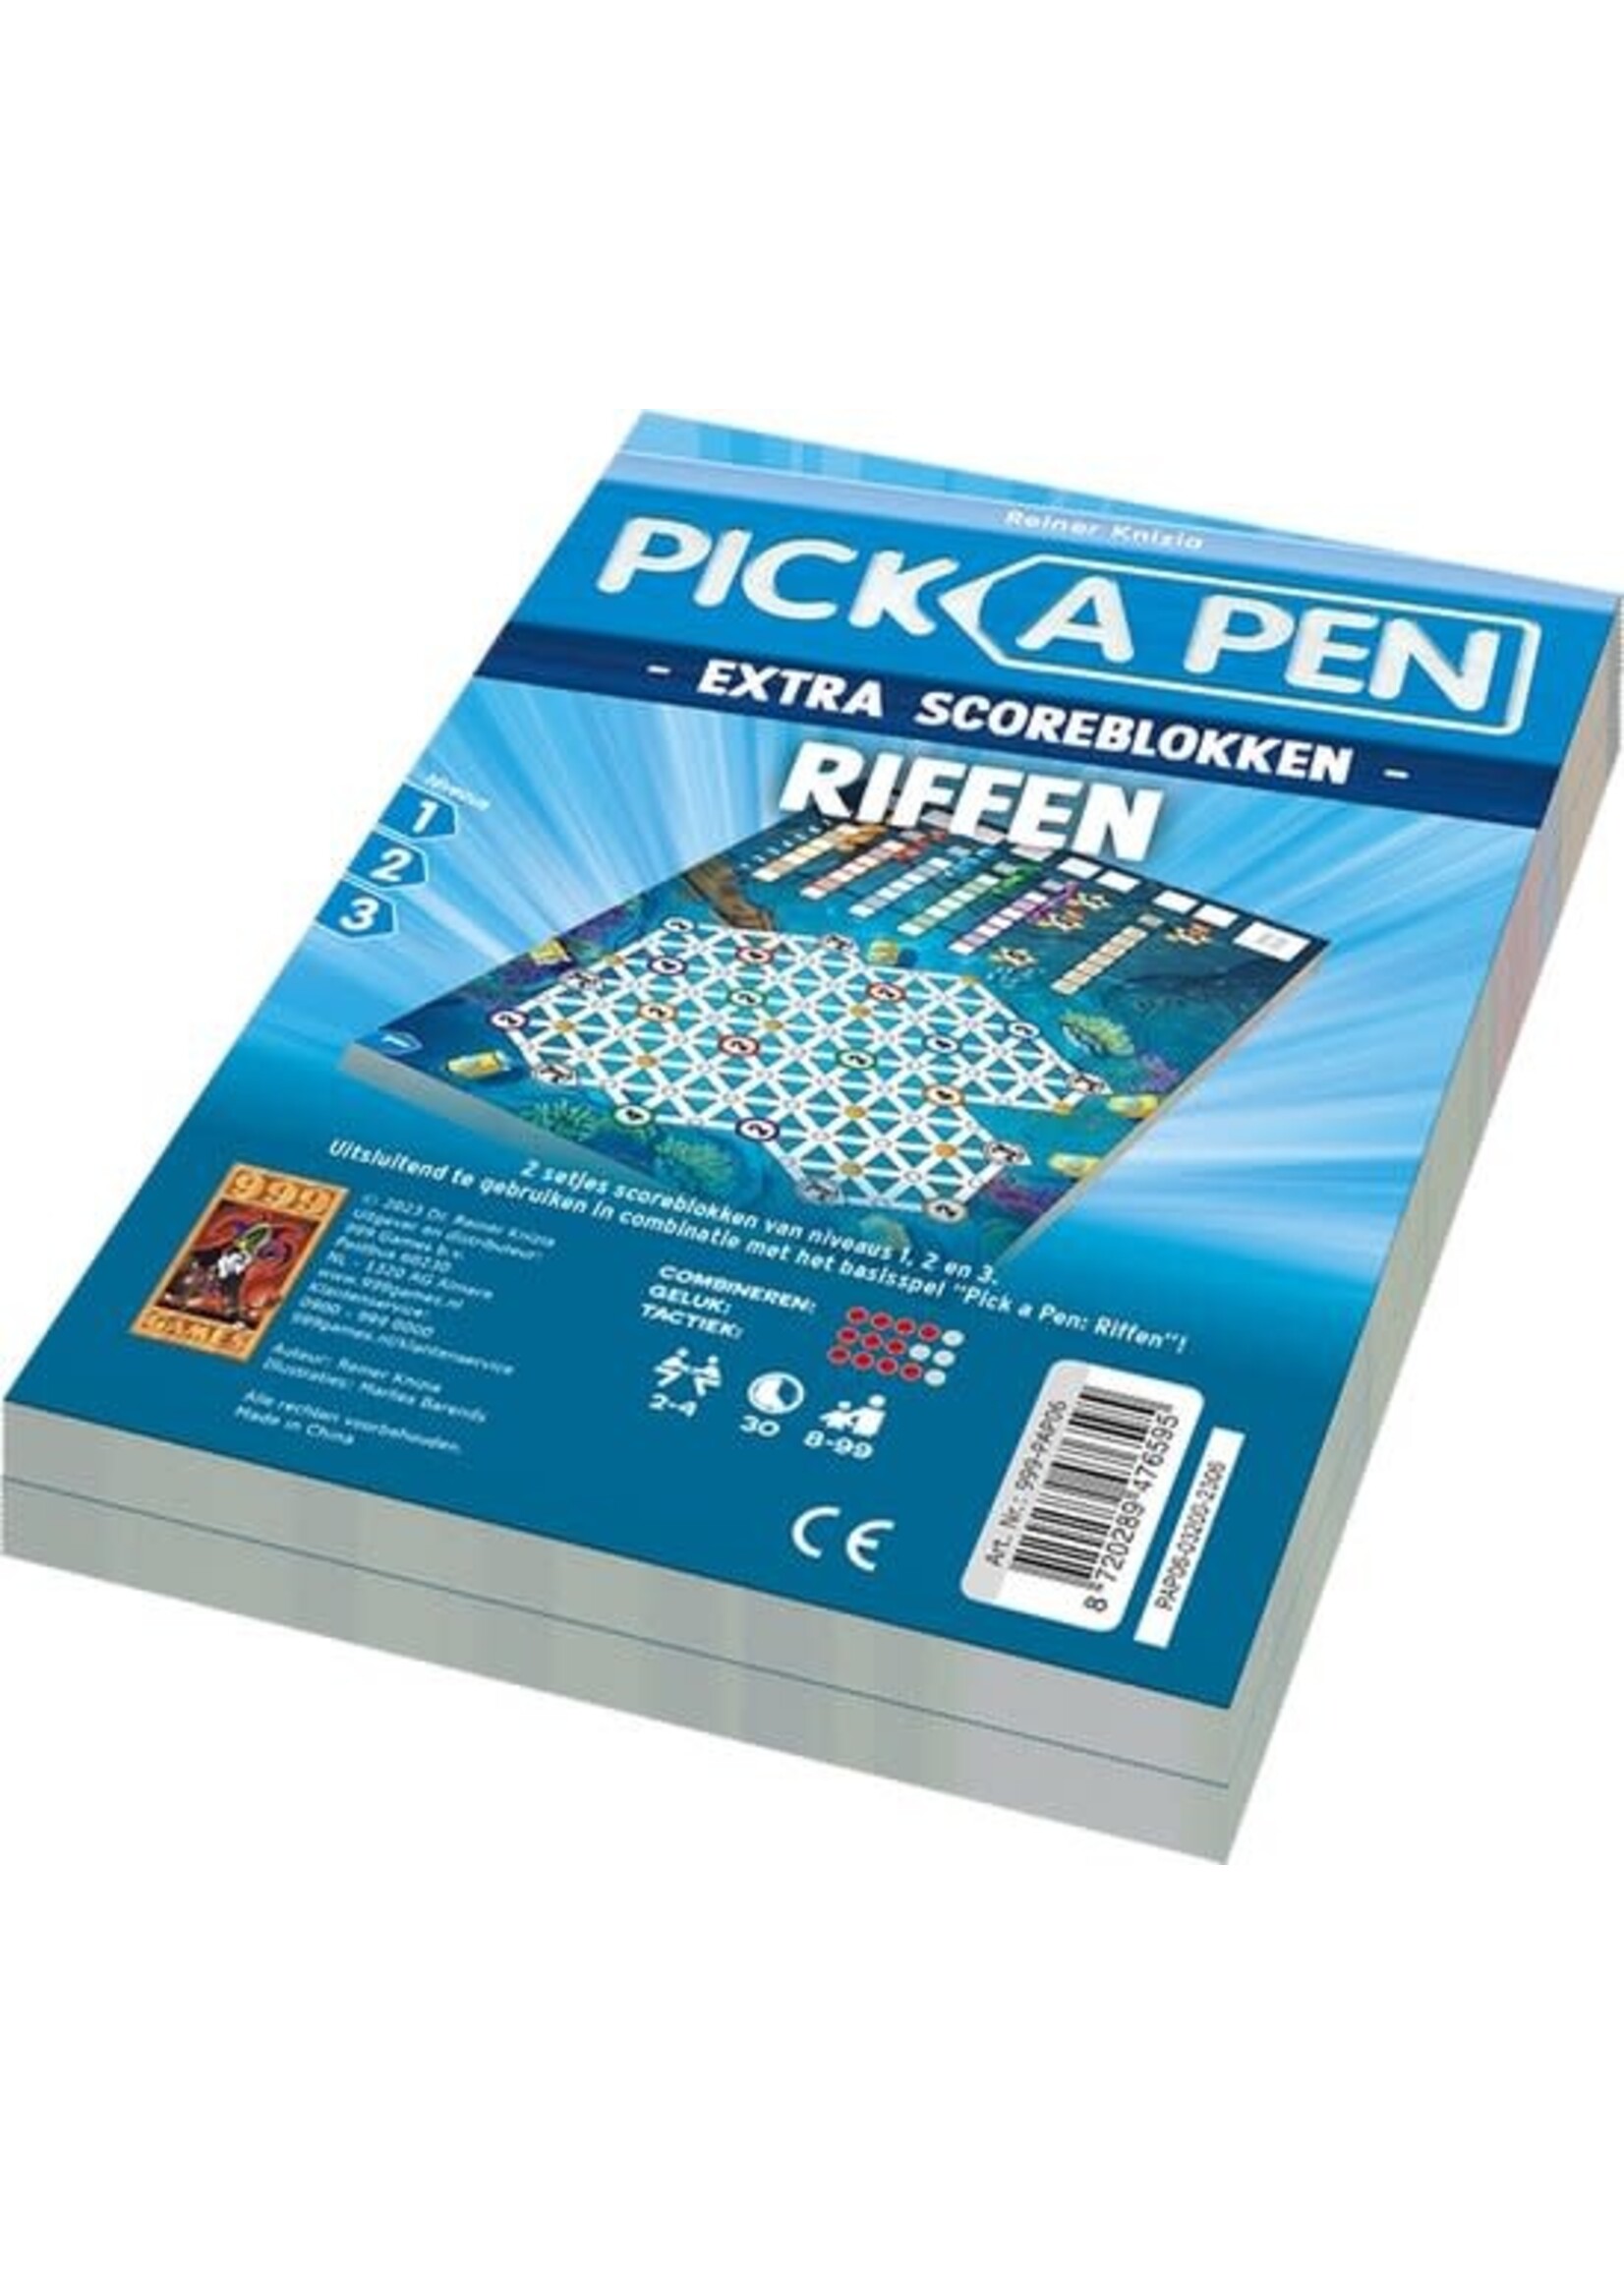 999 Games Scoreblokken Pick a Pen Riffen